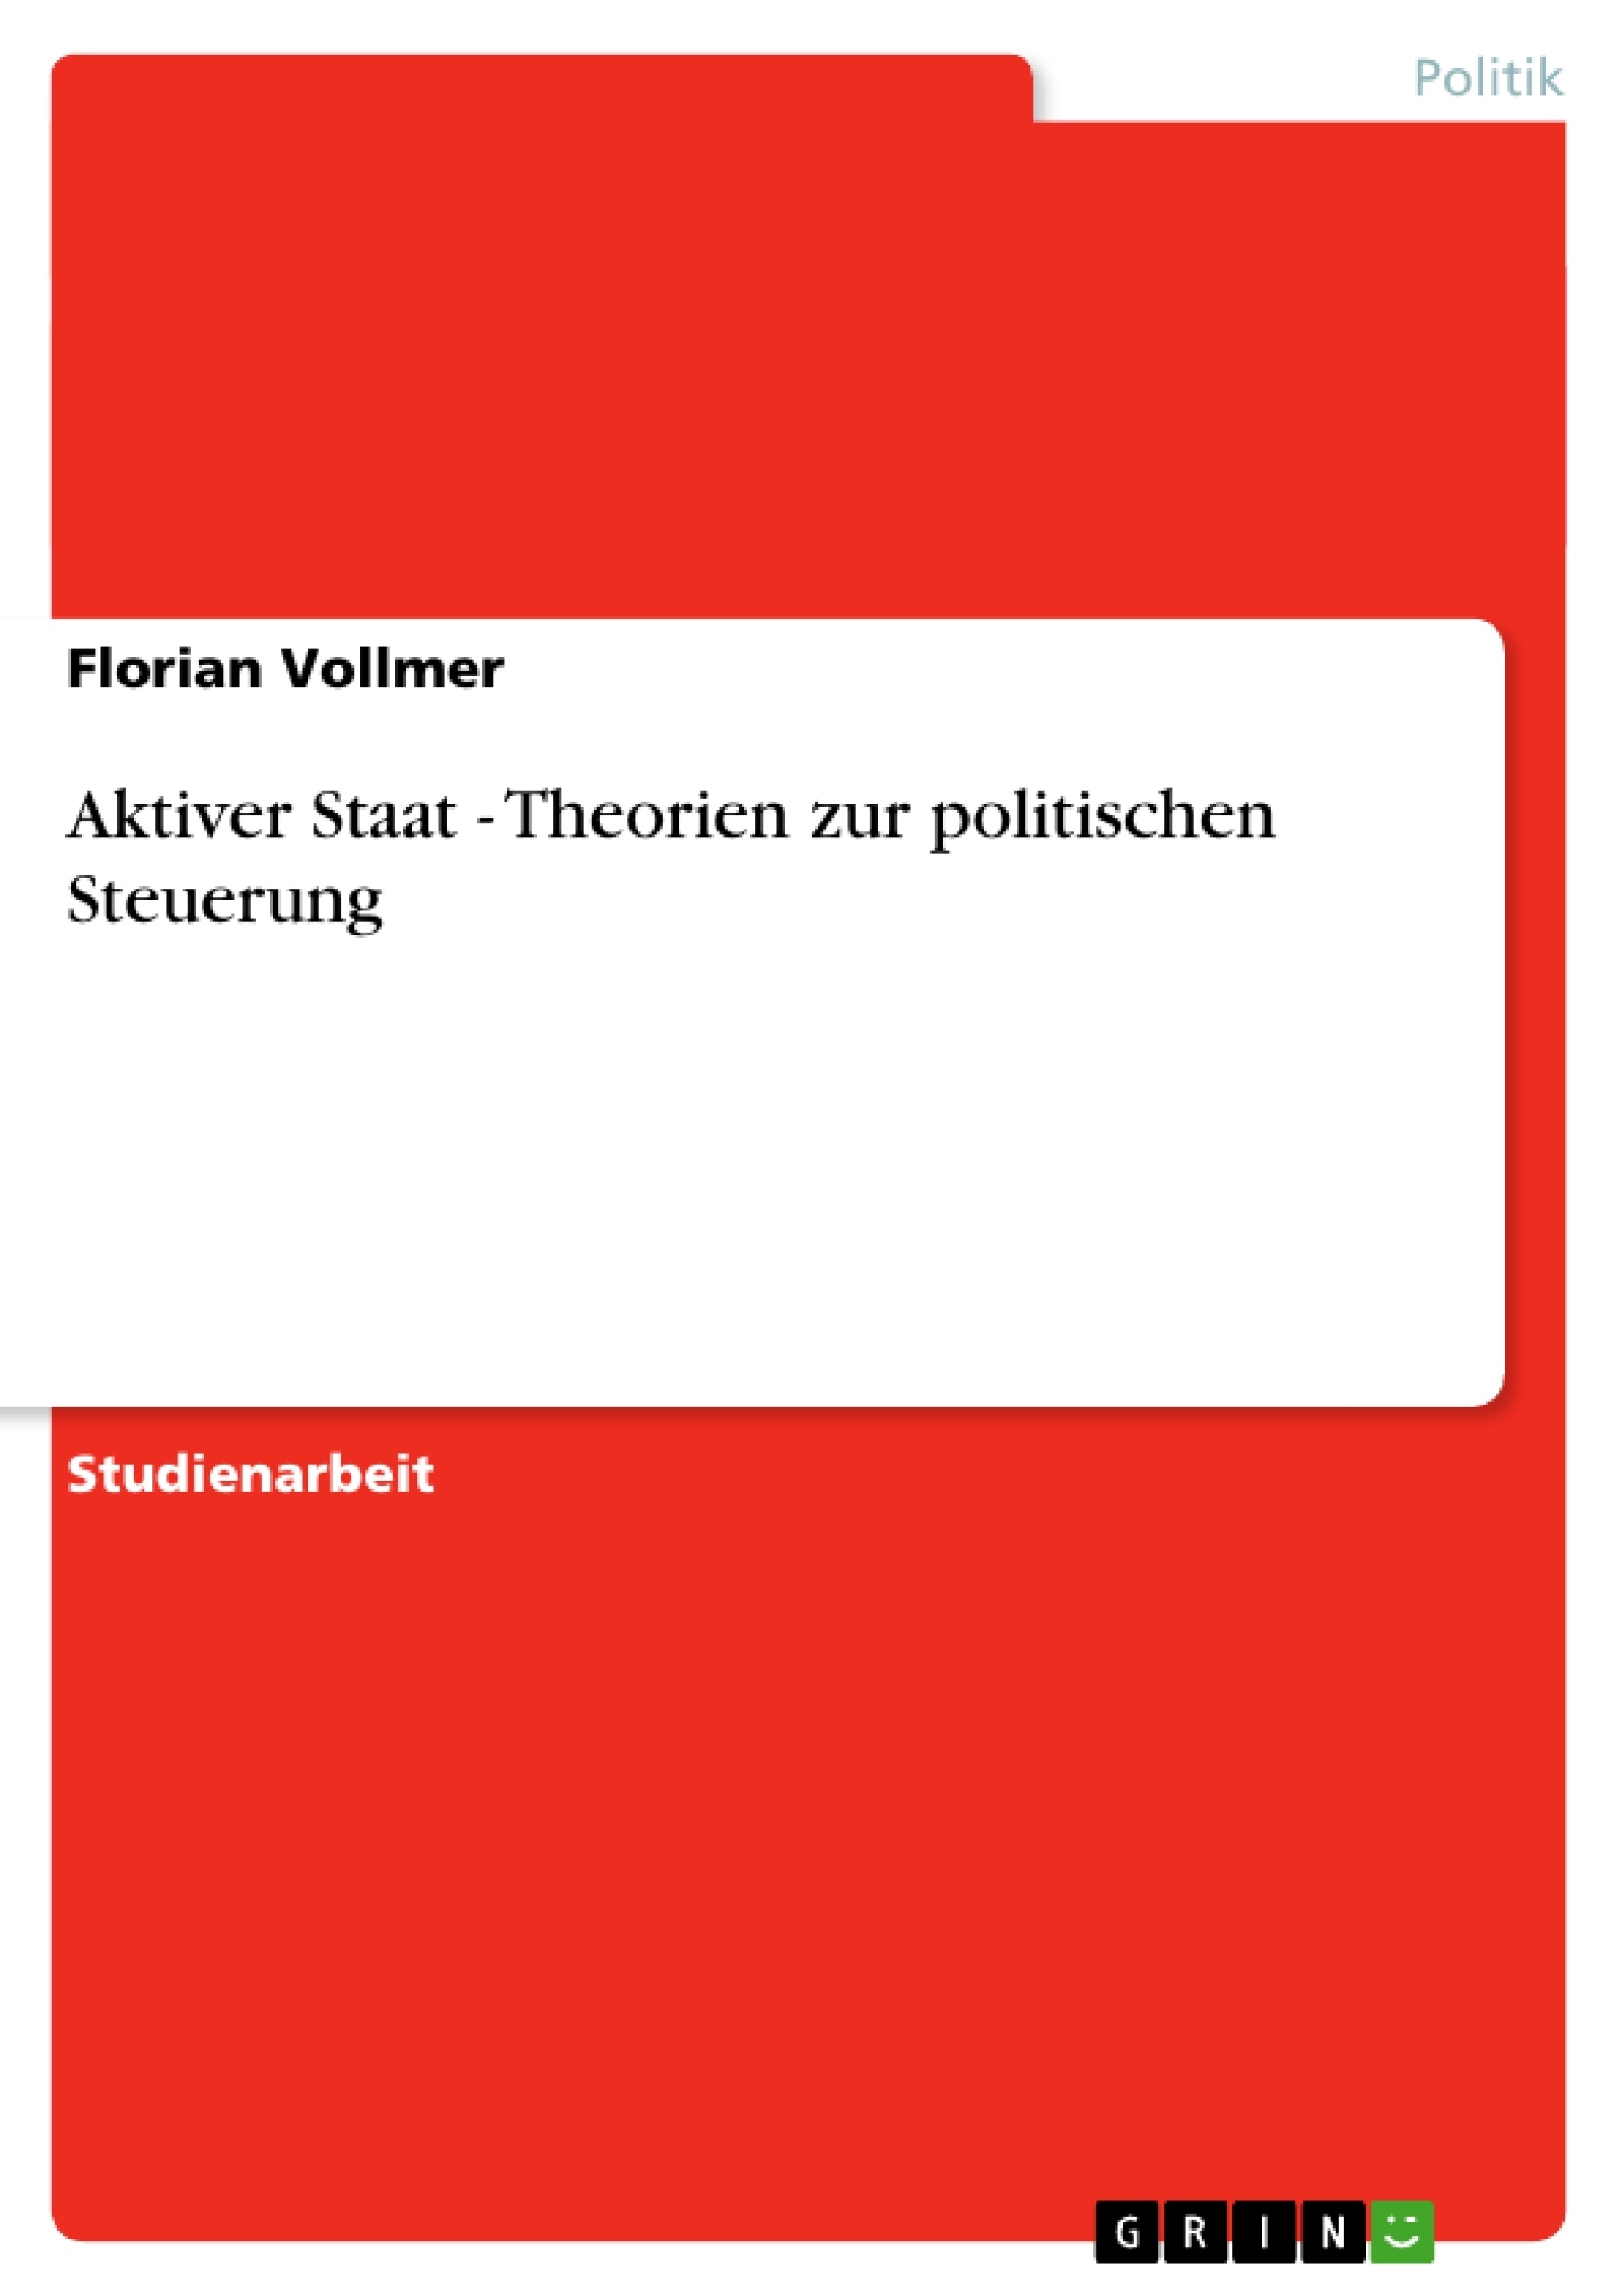 Title: Aktiver Staat - Theorien zur politischen Steuerung